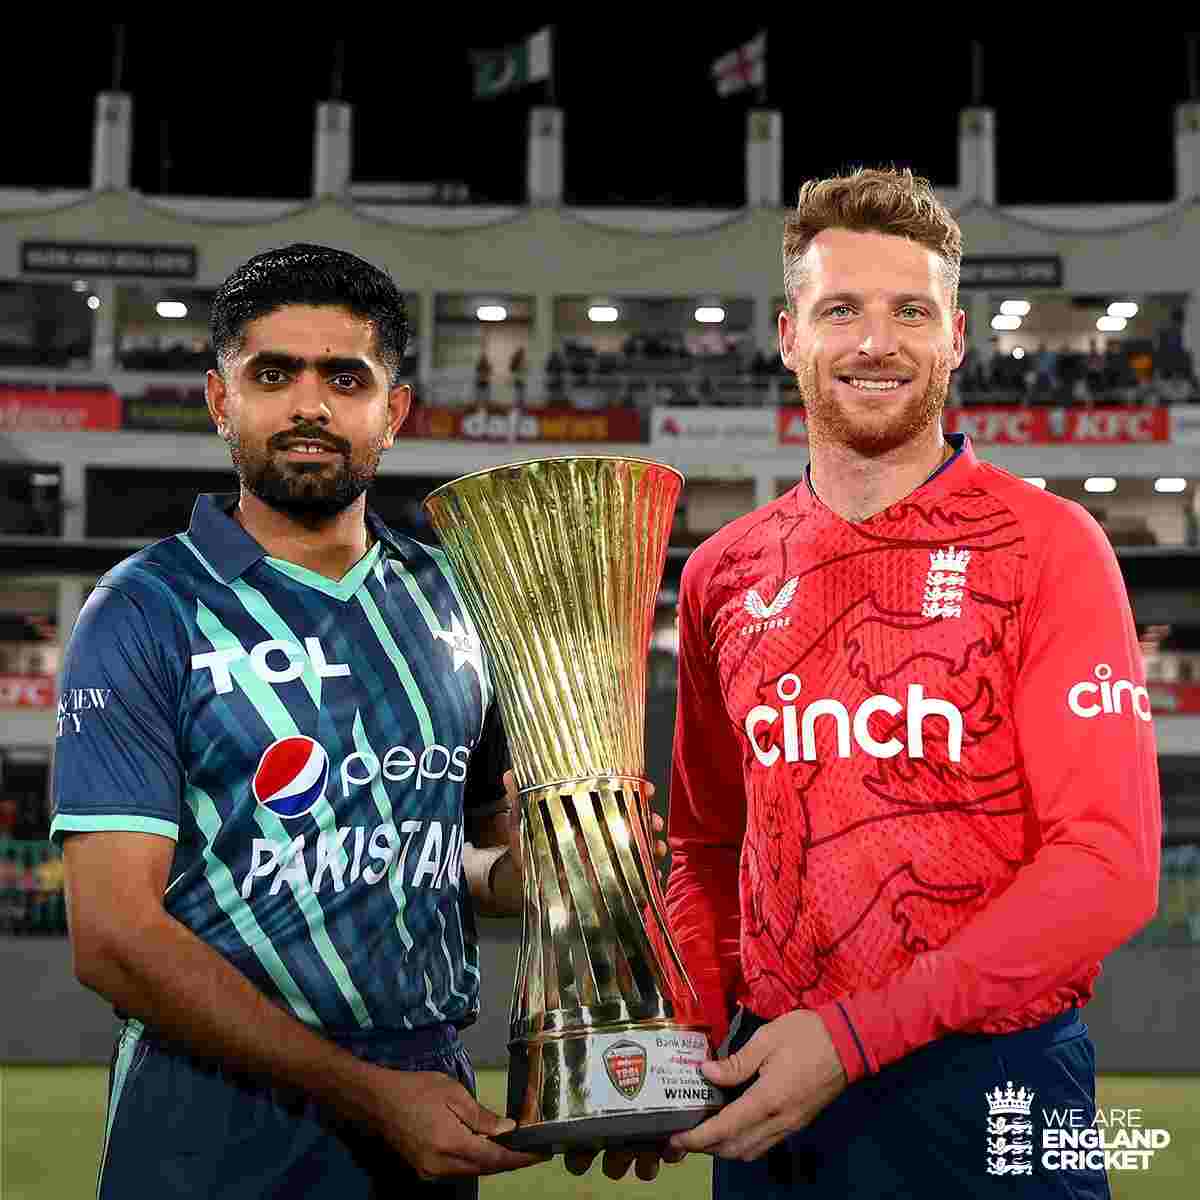 pakistan england tour 2022